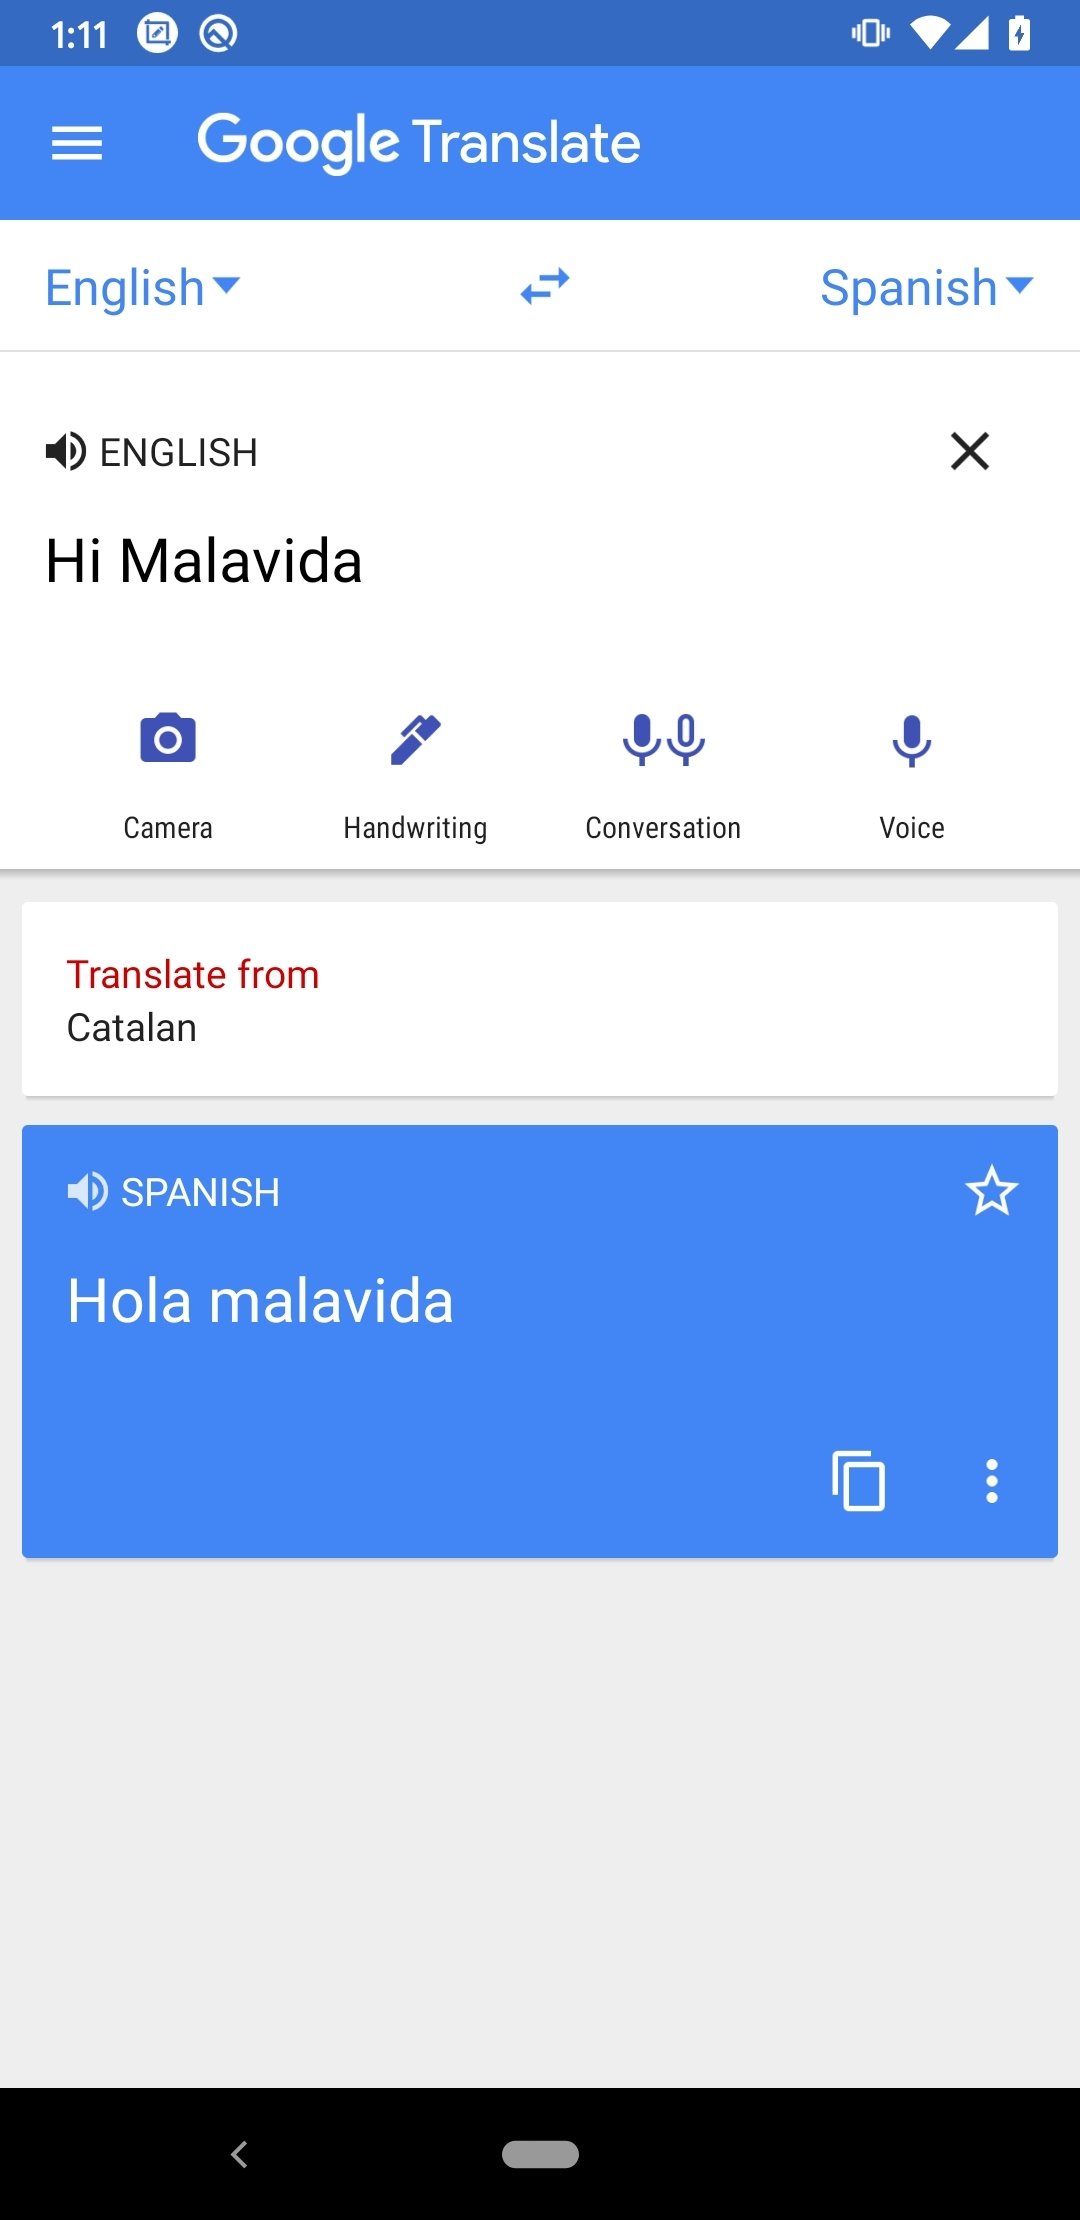 Descargar Traductor de Google 5.18.0 Android APK Gratis en Español